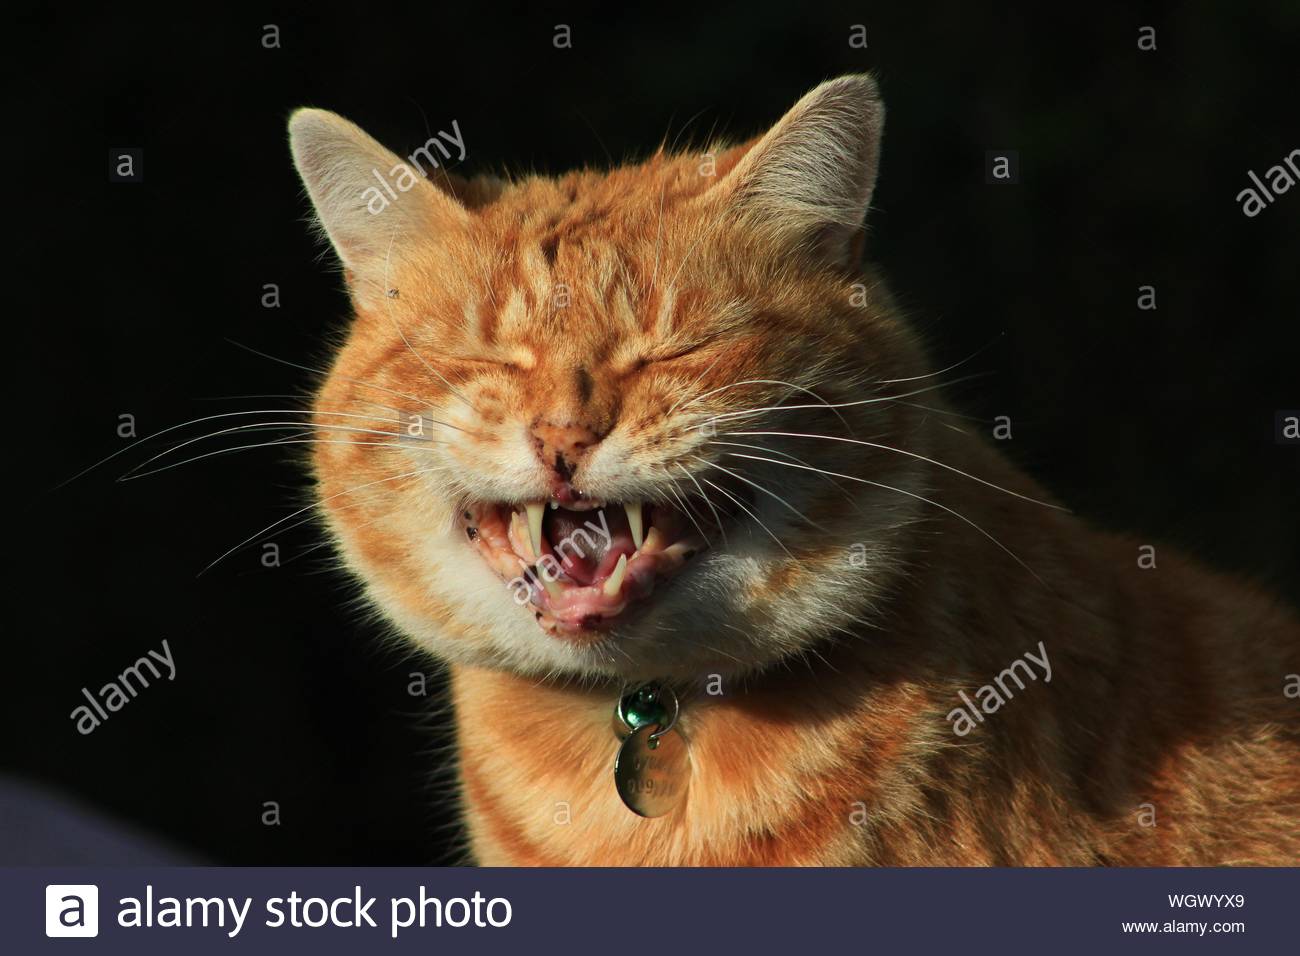 Реакция улыбающихся тварей. Кот смеется. Котик улыбается. Рыжий кот ржет. Рыжий кот улыбается.